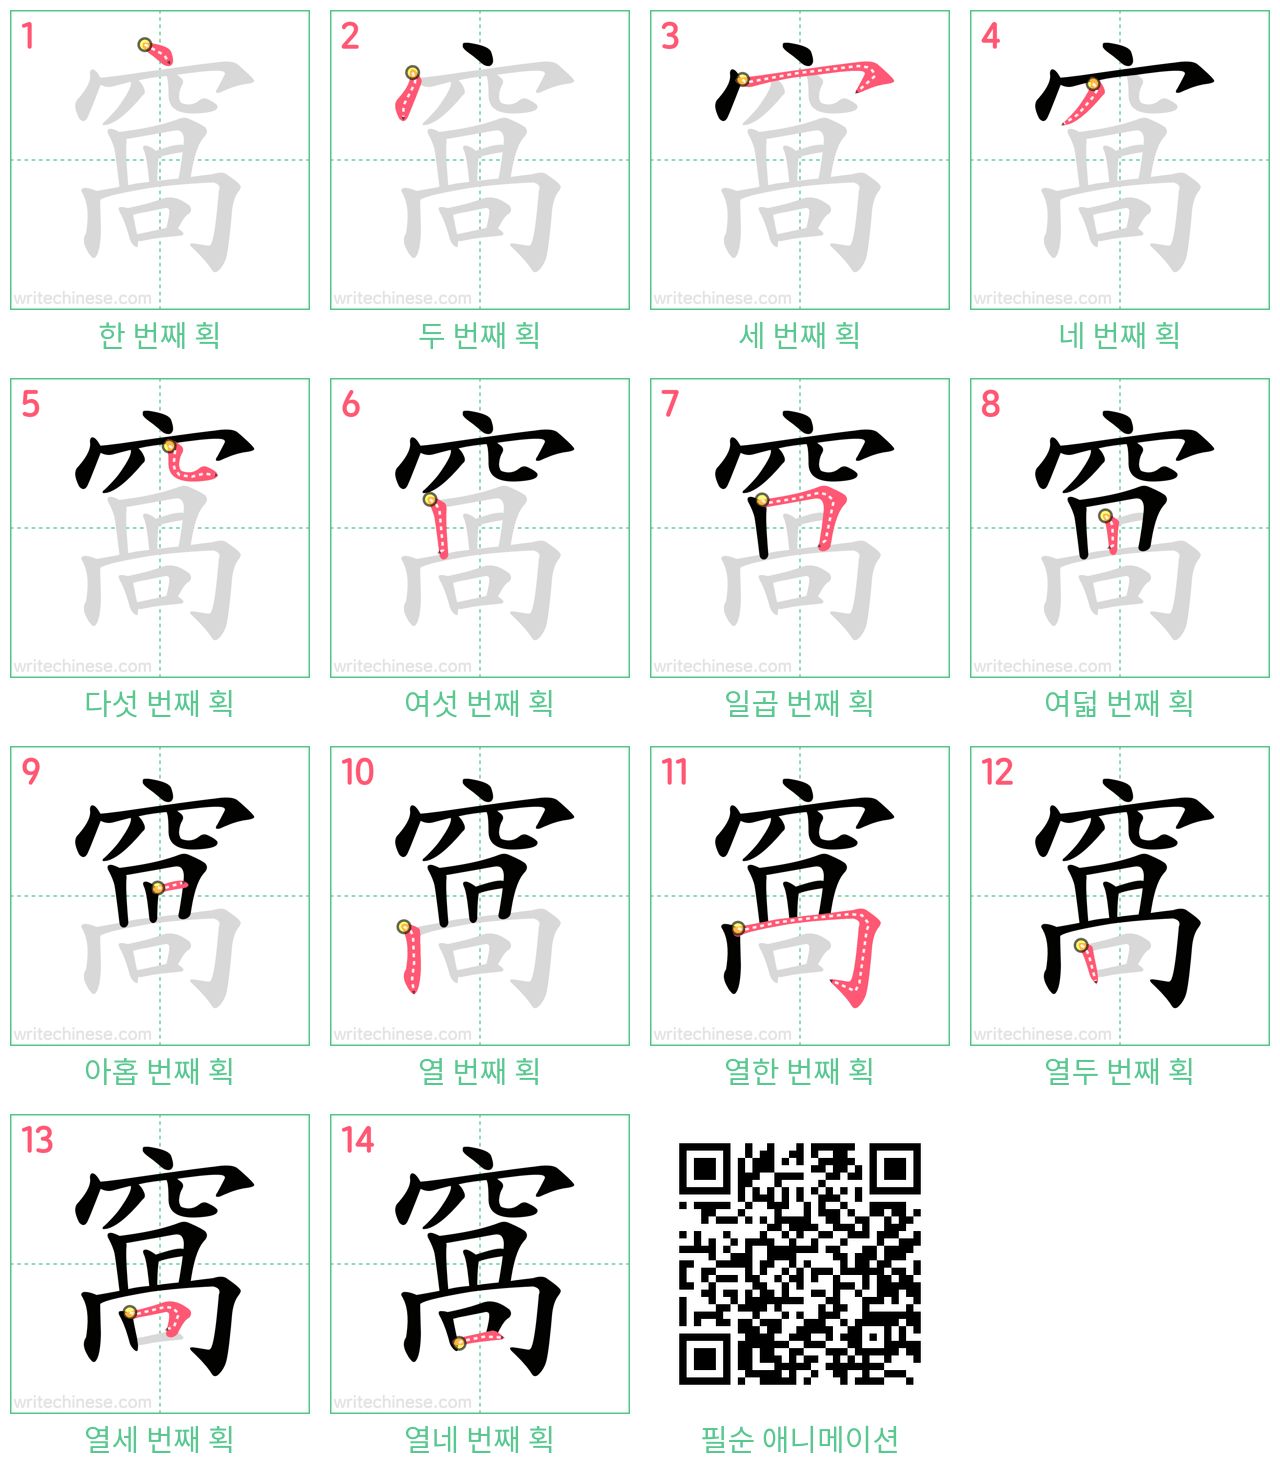 窩 step-by-step stroke order diagrams